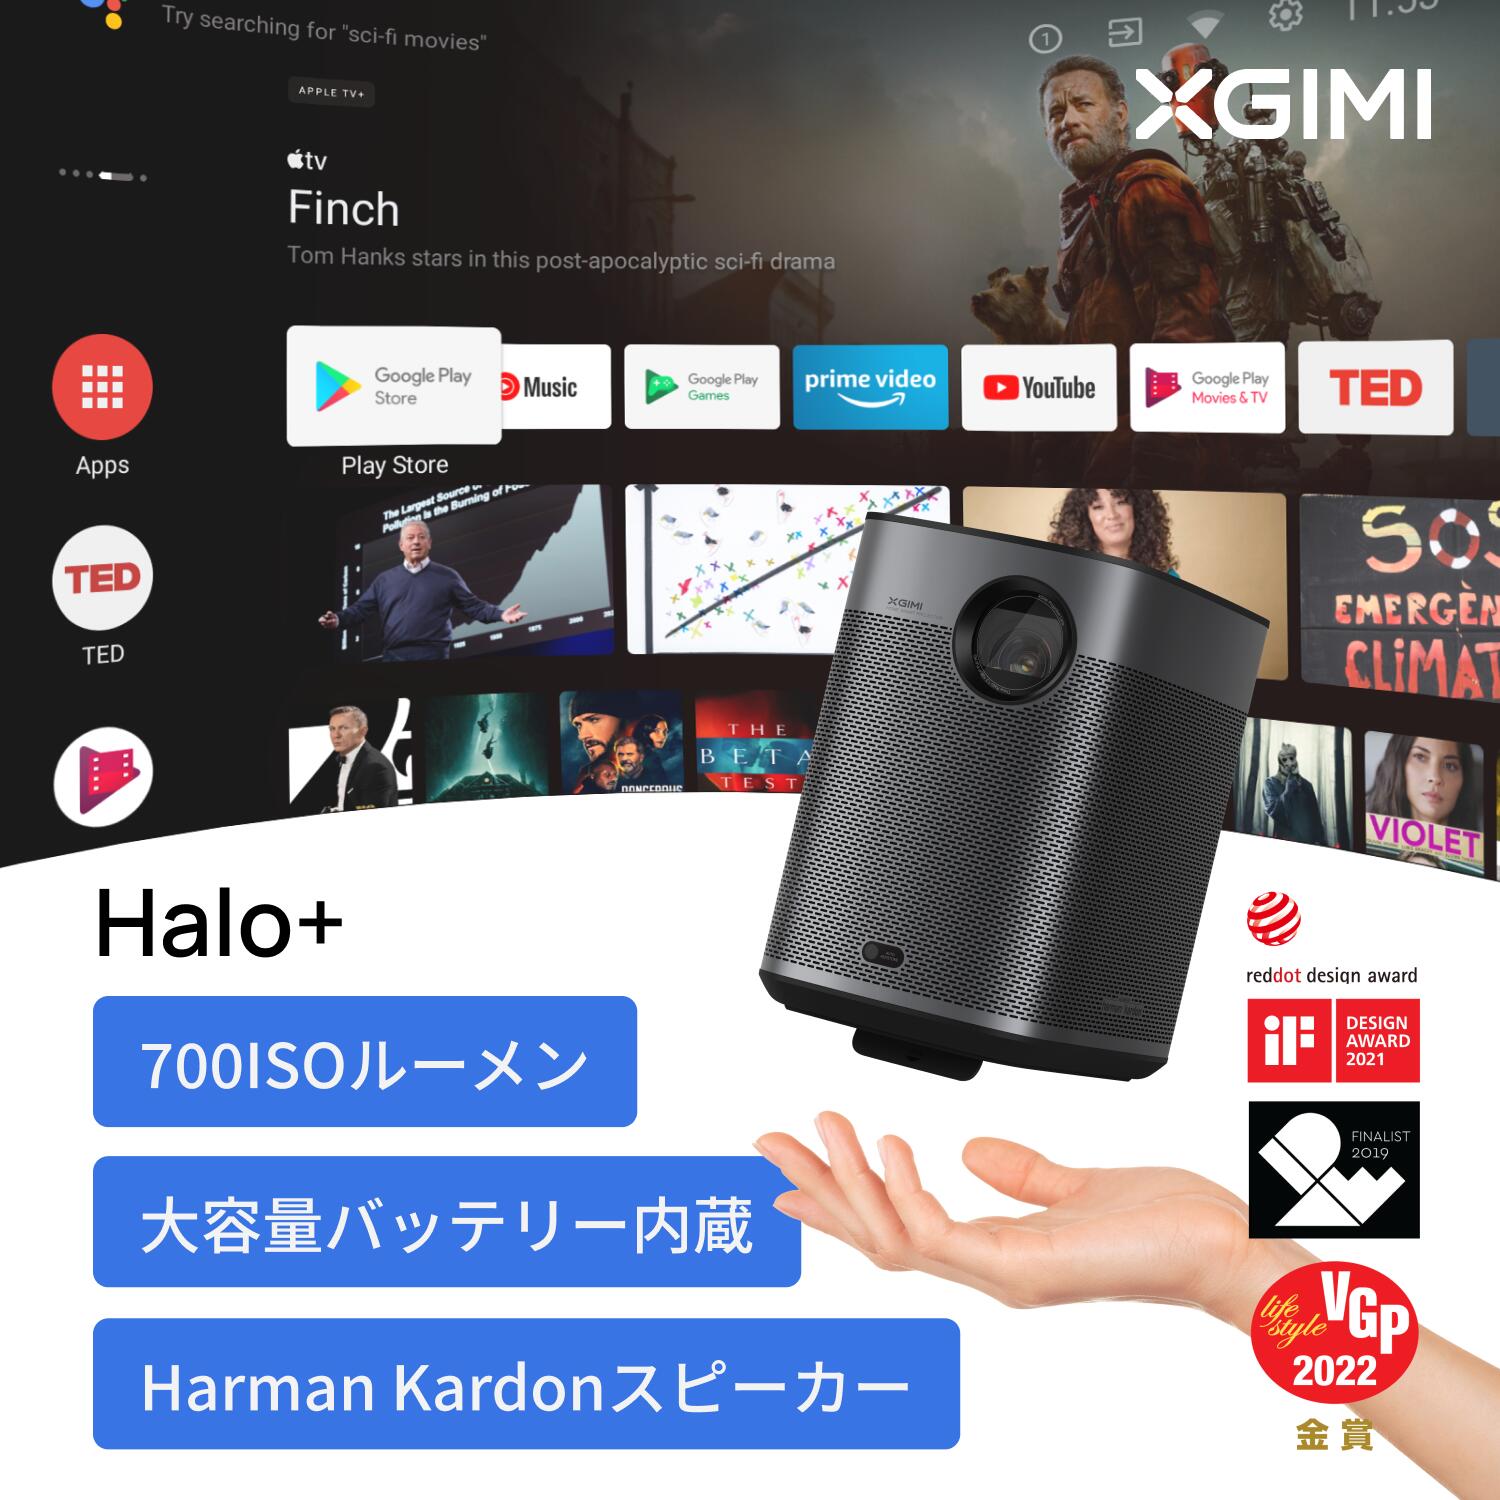 【5/30限定 15%OFF】XGIMI Halo+ モバイルプロジェクター フルHD 1080p Android TV 10.0搭載 【Harman Kardonスピーカー / オートフォーカス / 自動台形補正 / bluetooth対応 / HDR10 / 低遅延 】